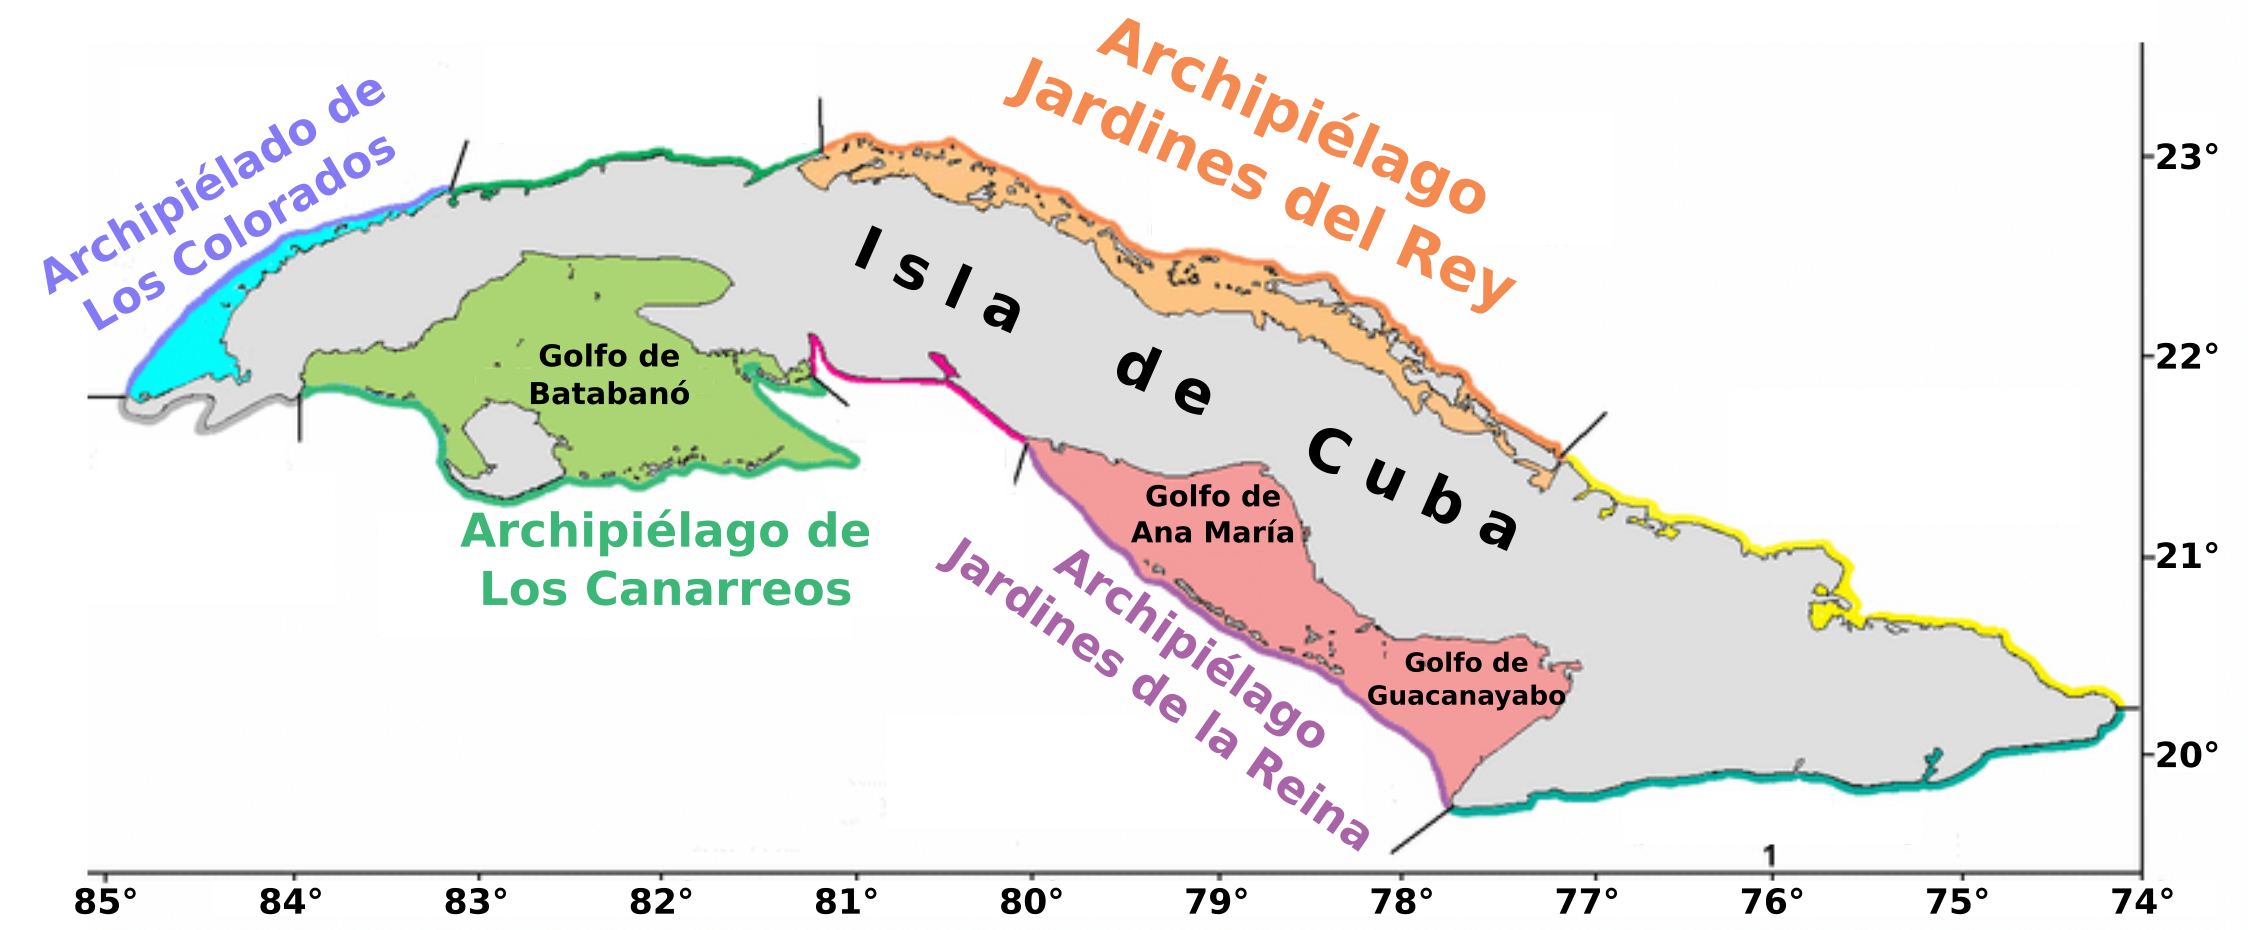 La Isla de Cuba y sus archipiélagos adyacentes.png